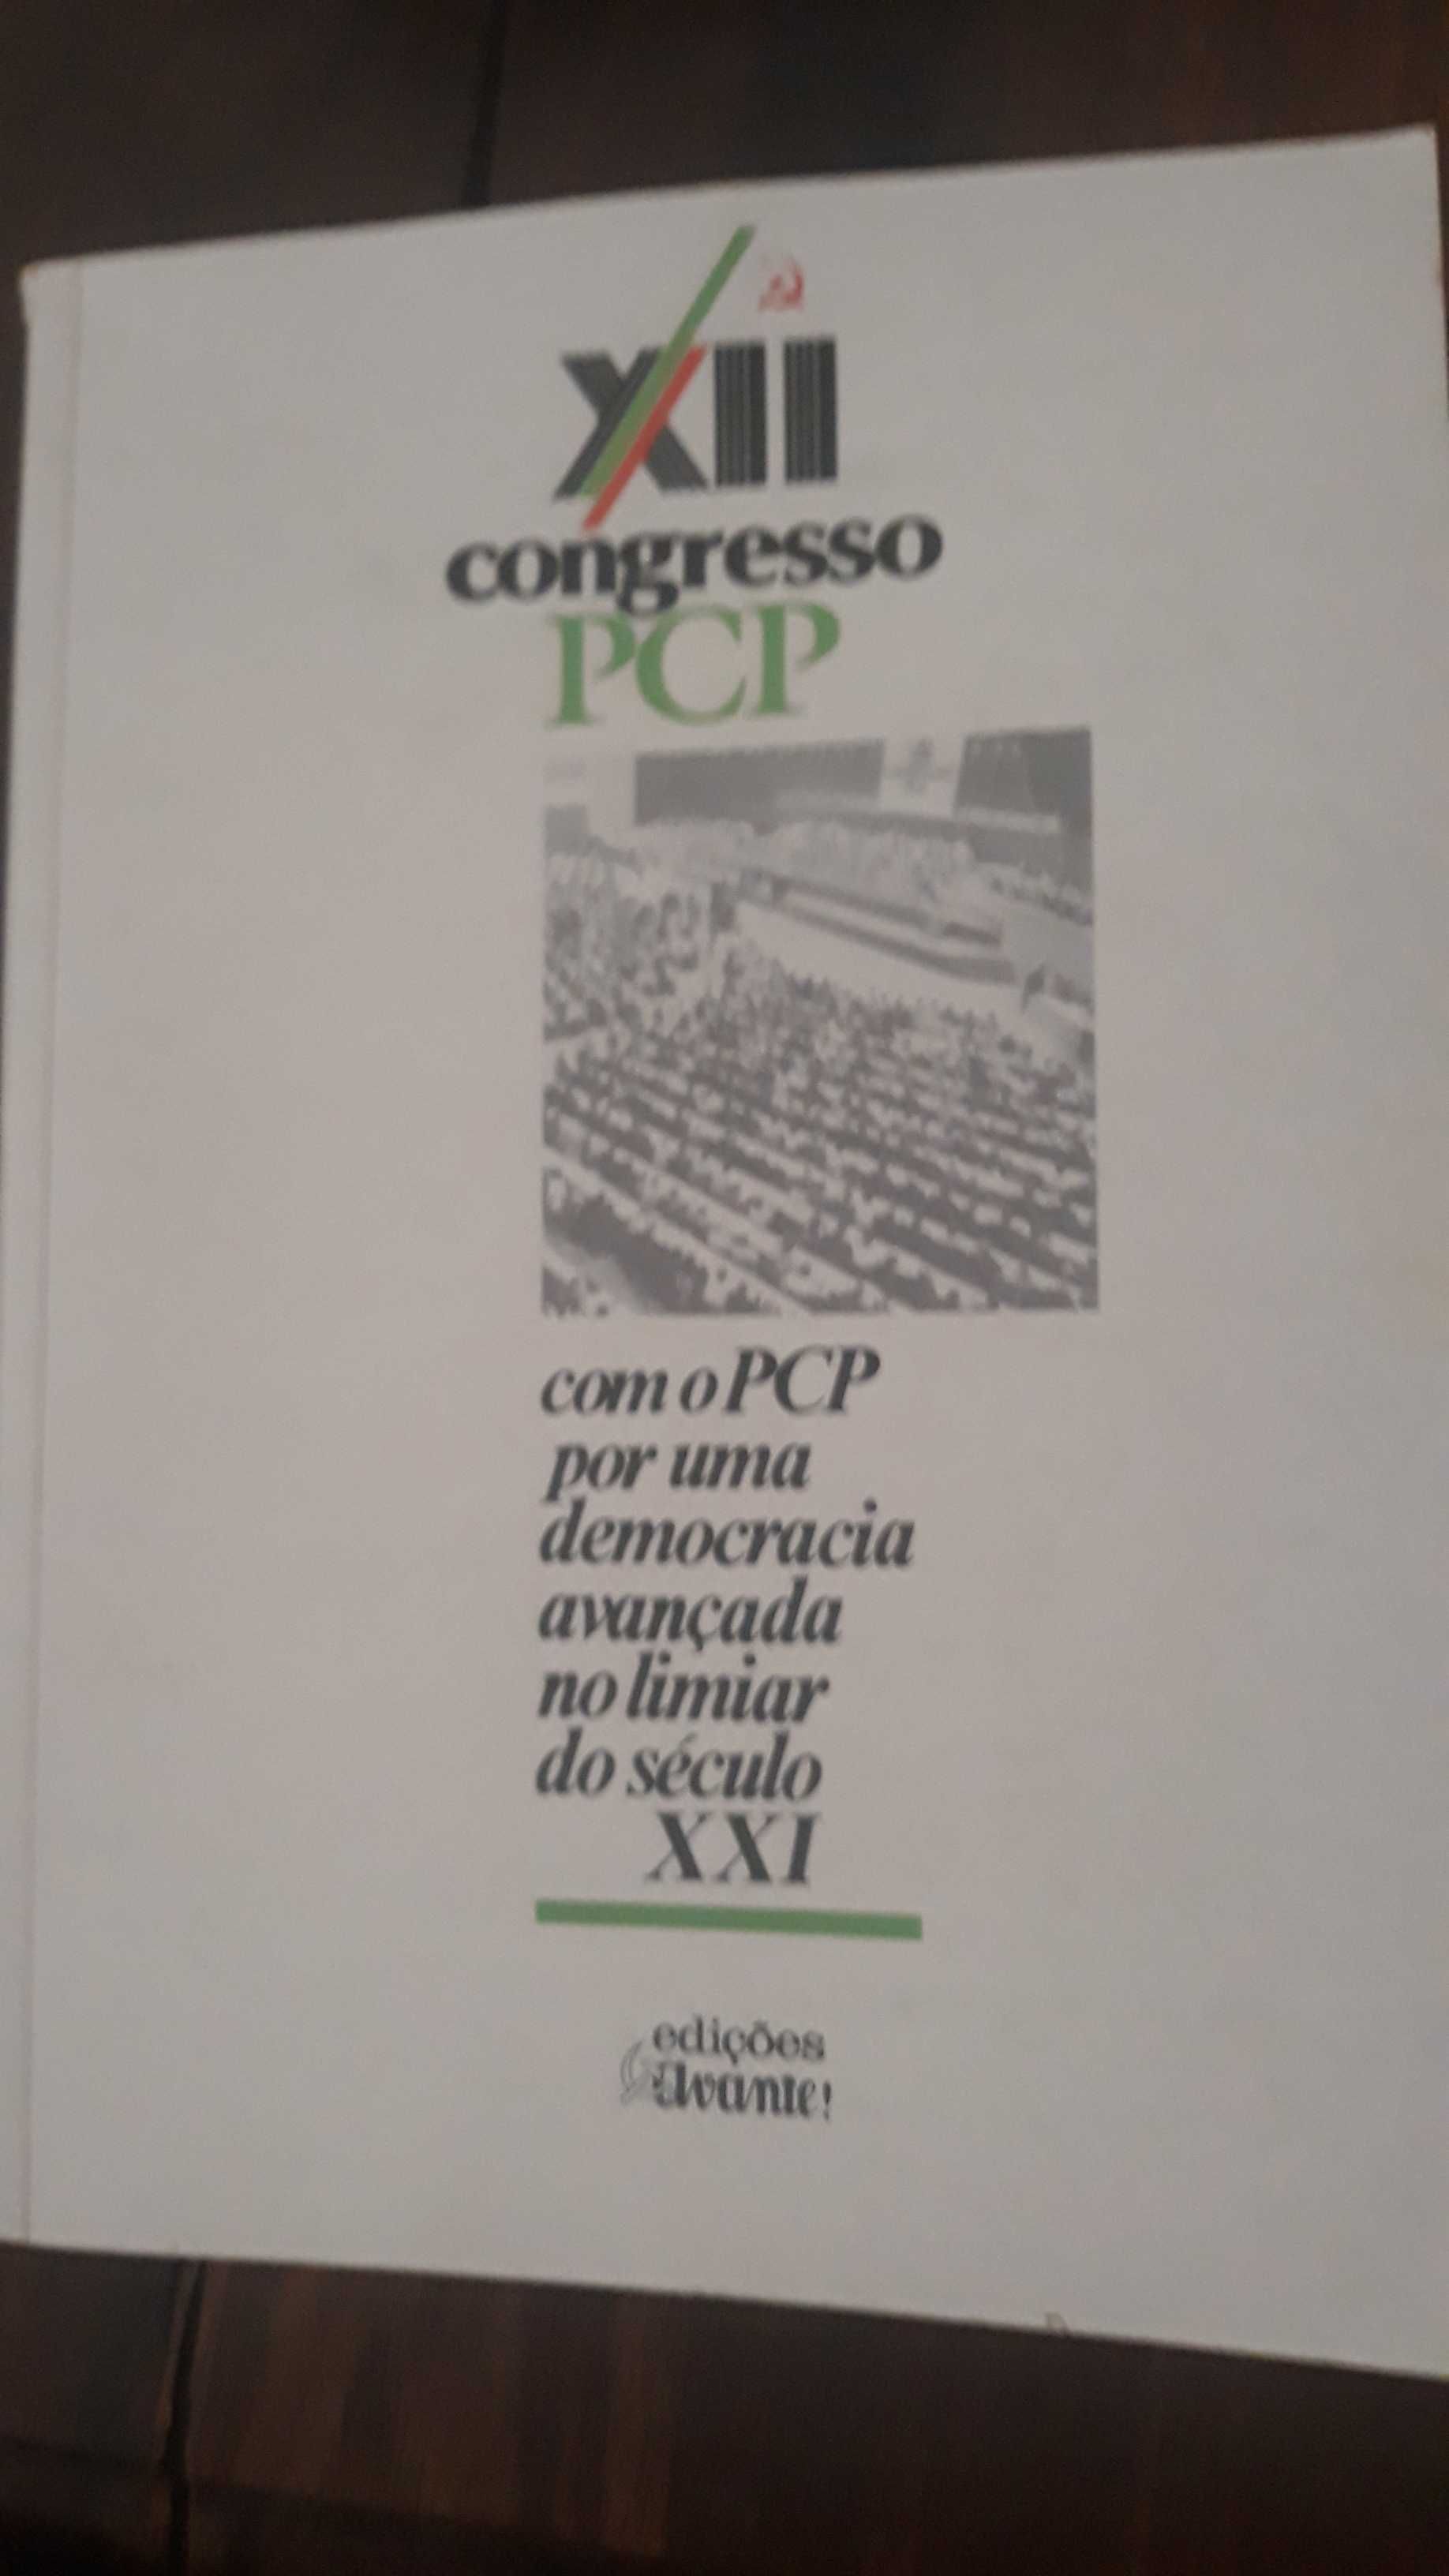 XII Congresso do PCP - Partido Comunista Português